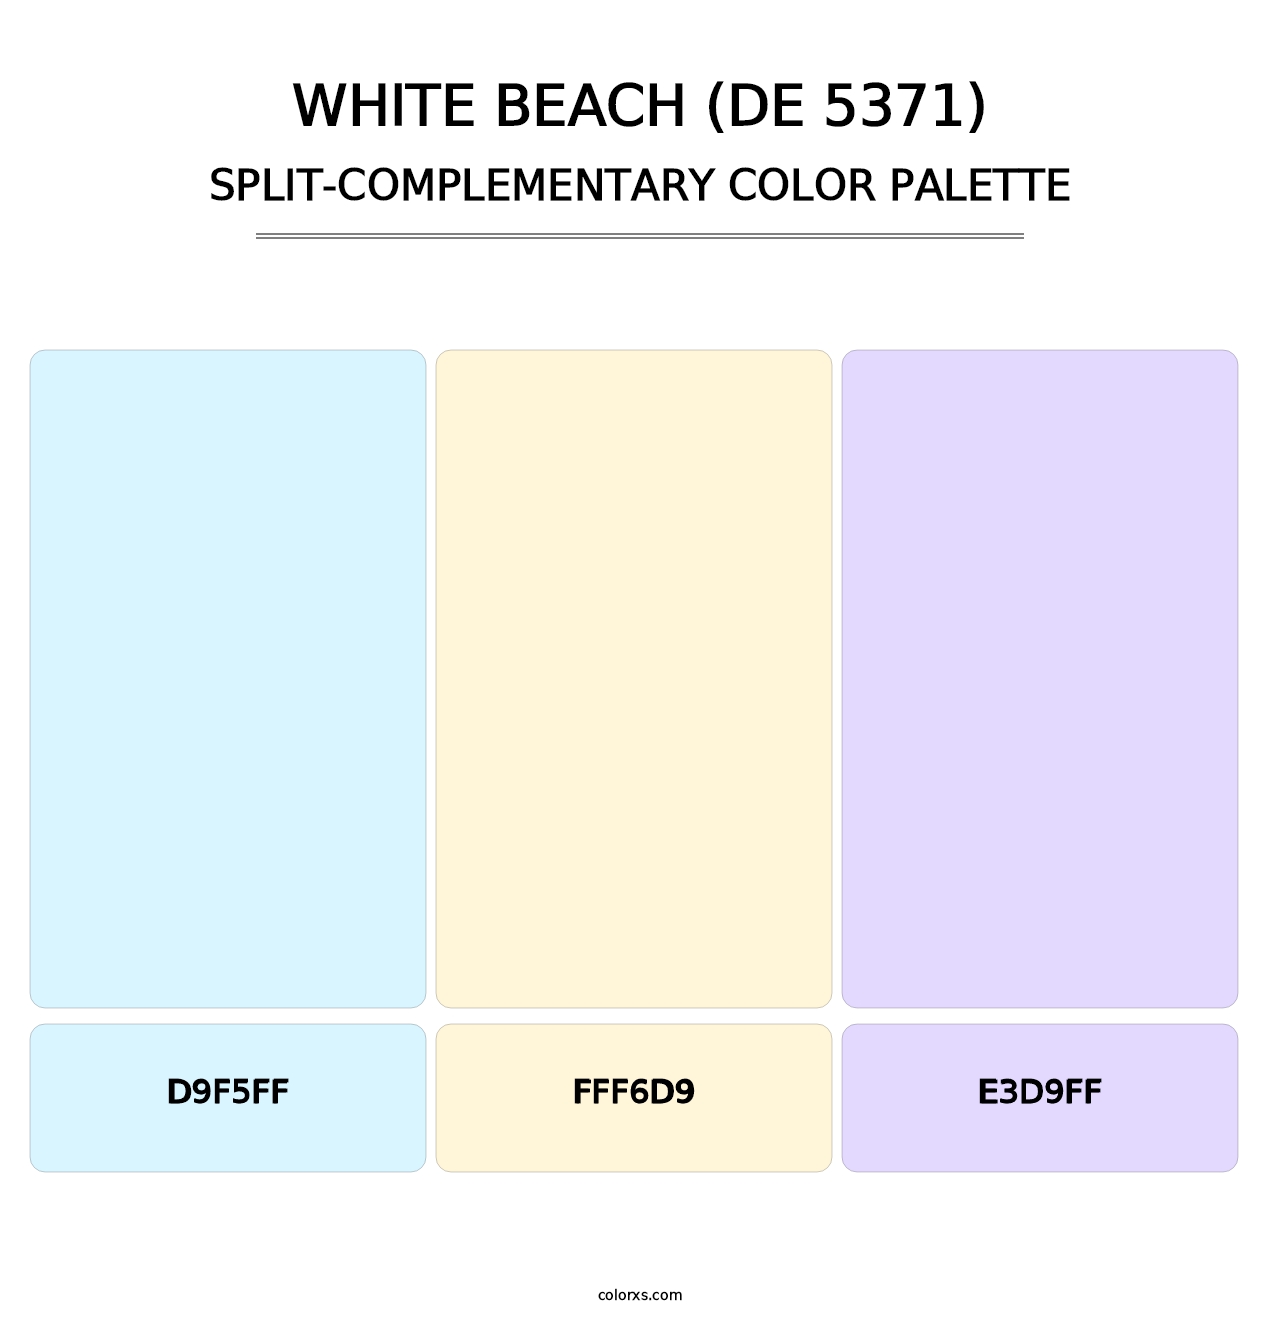 White Beach (DE 5371) - Split-Complementary Color Palette